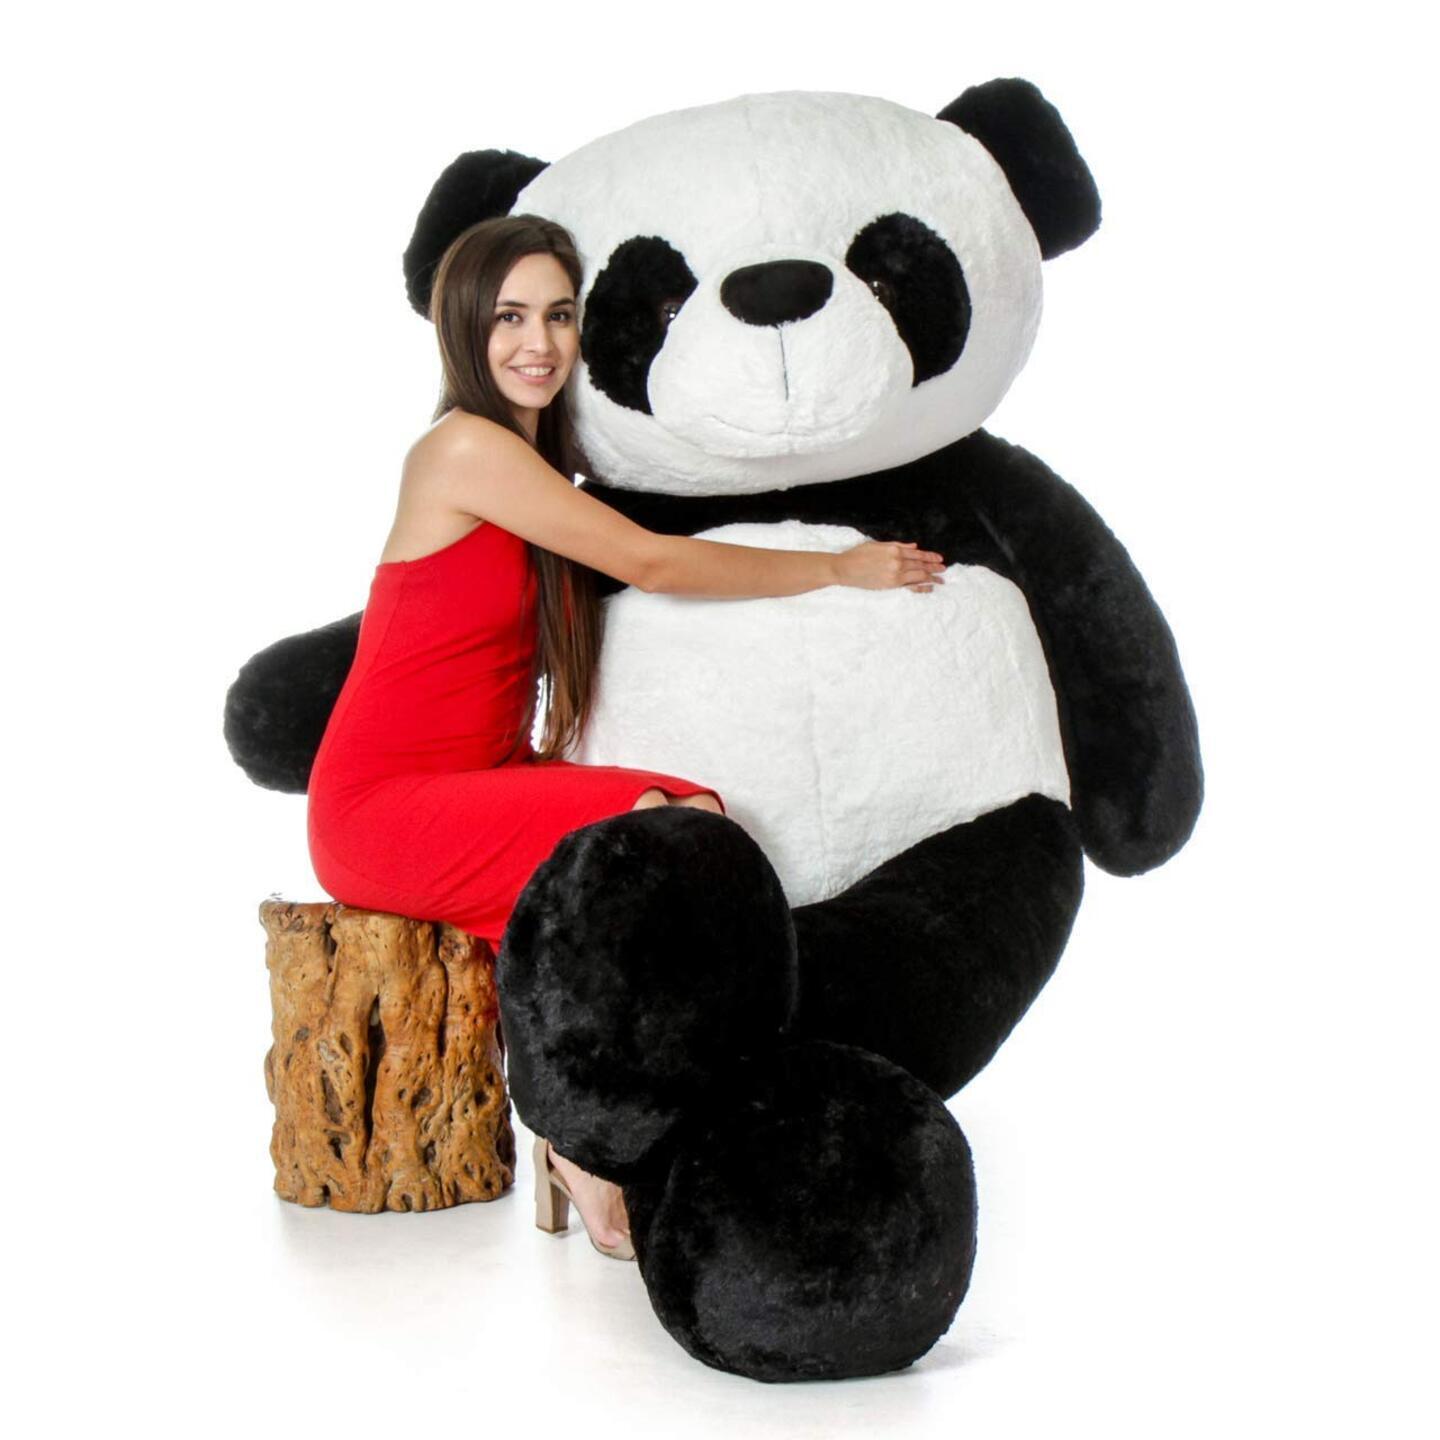 100% Child Safe Washable Giant Life Size Panda Soft Toy (4 feet)